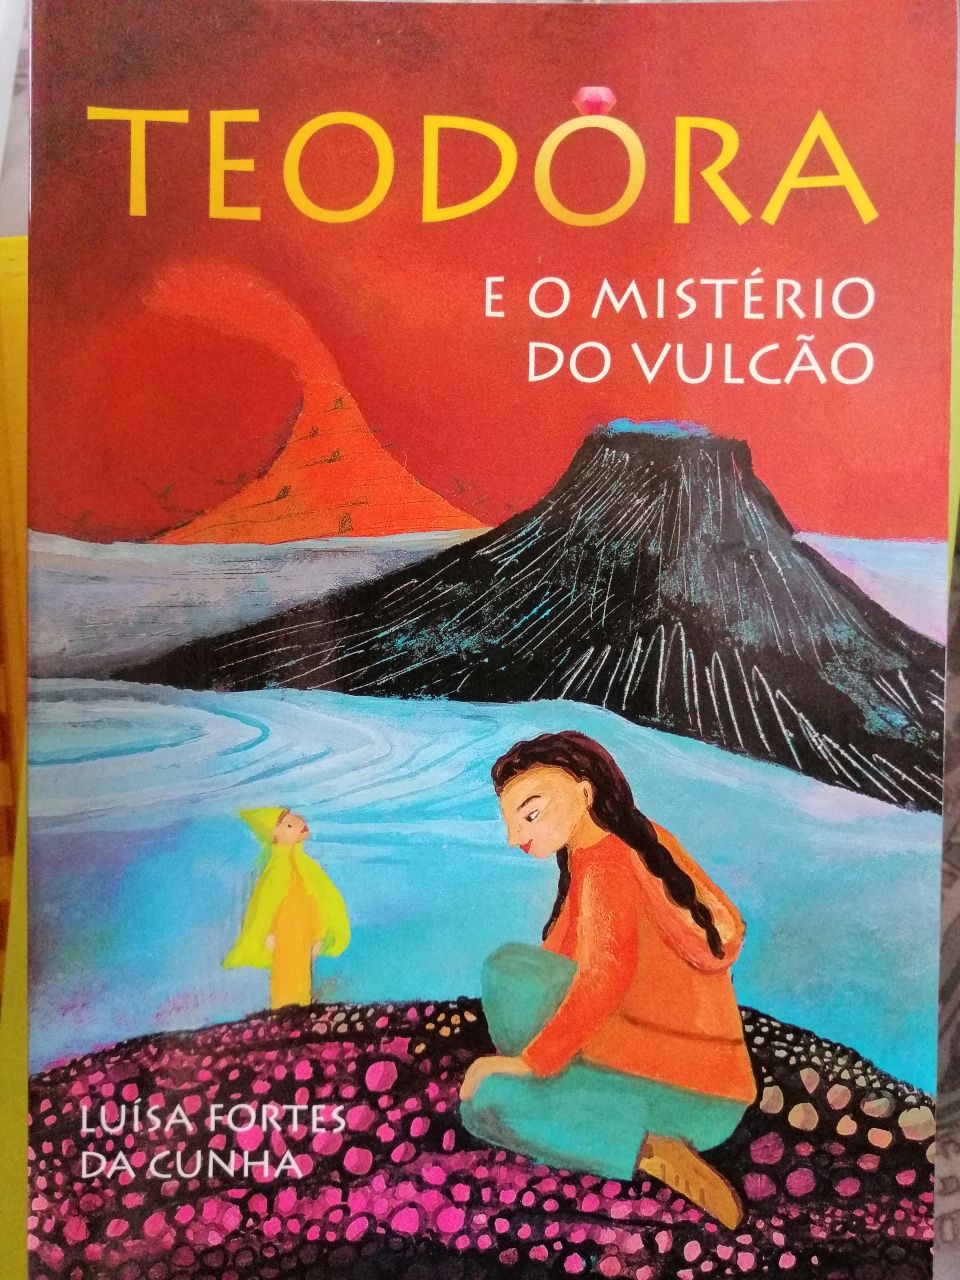 A Teodora e o mistério do vulcão